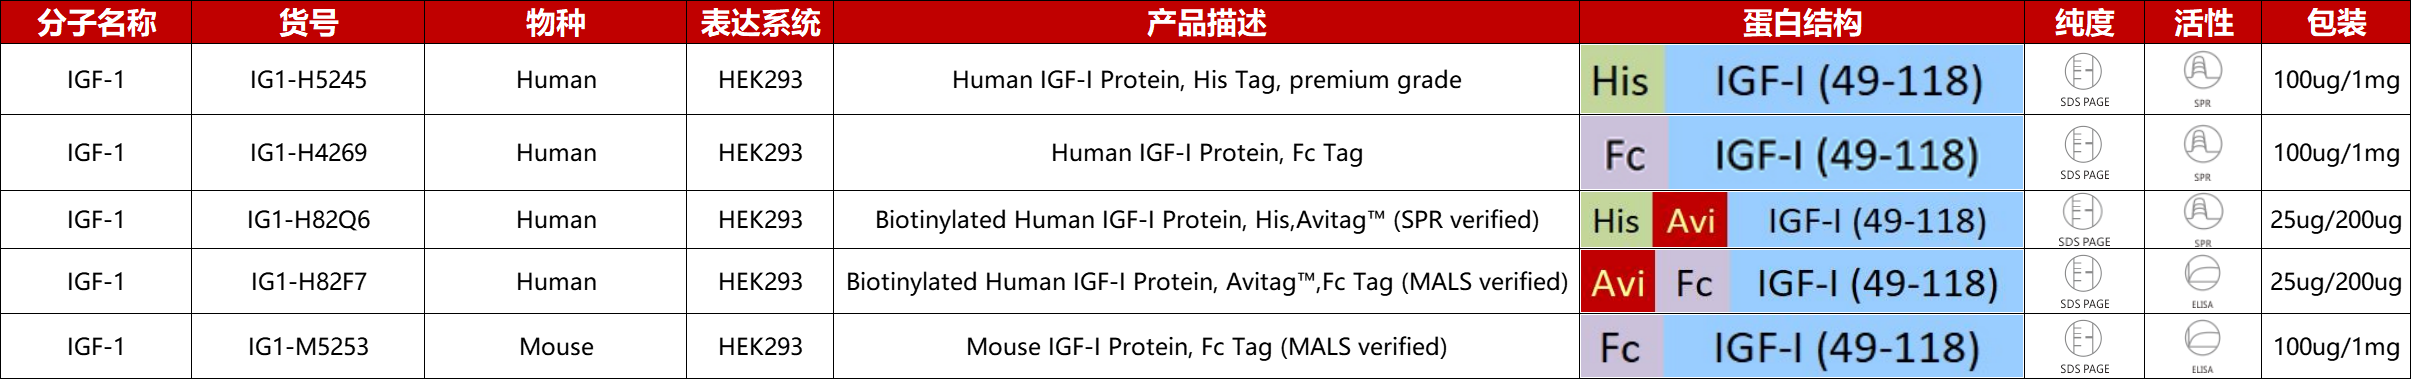 IGF-1重组蛋白产品列表